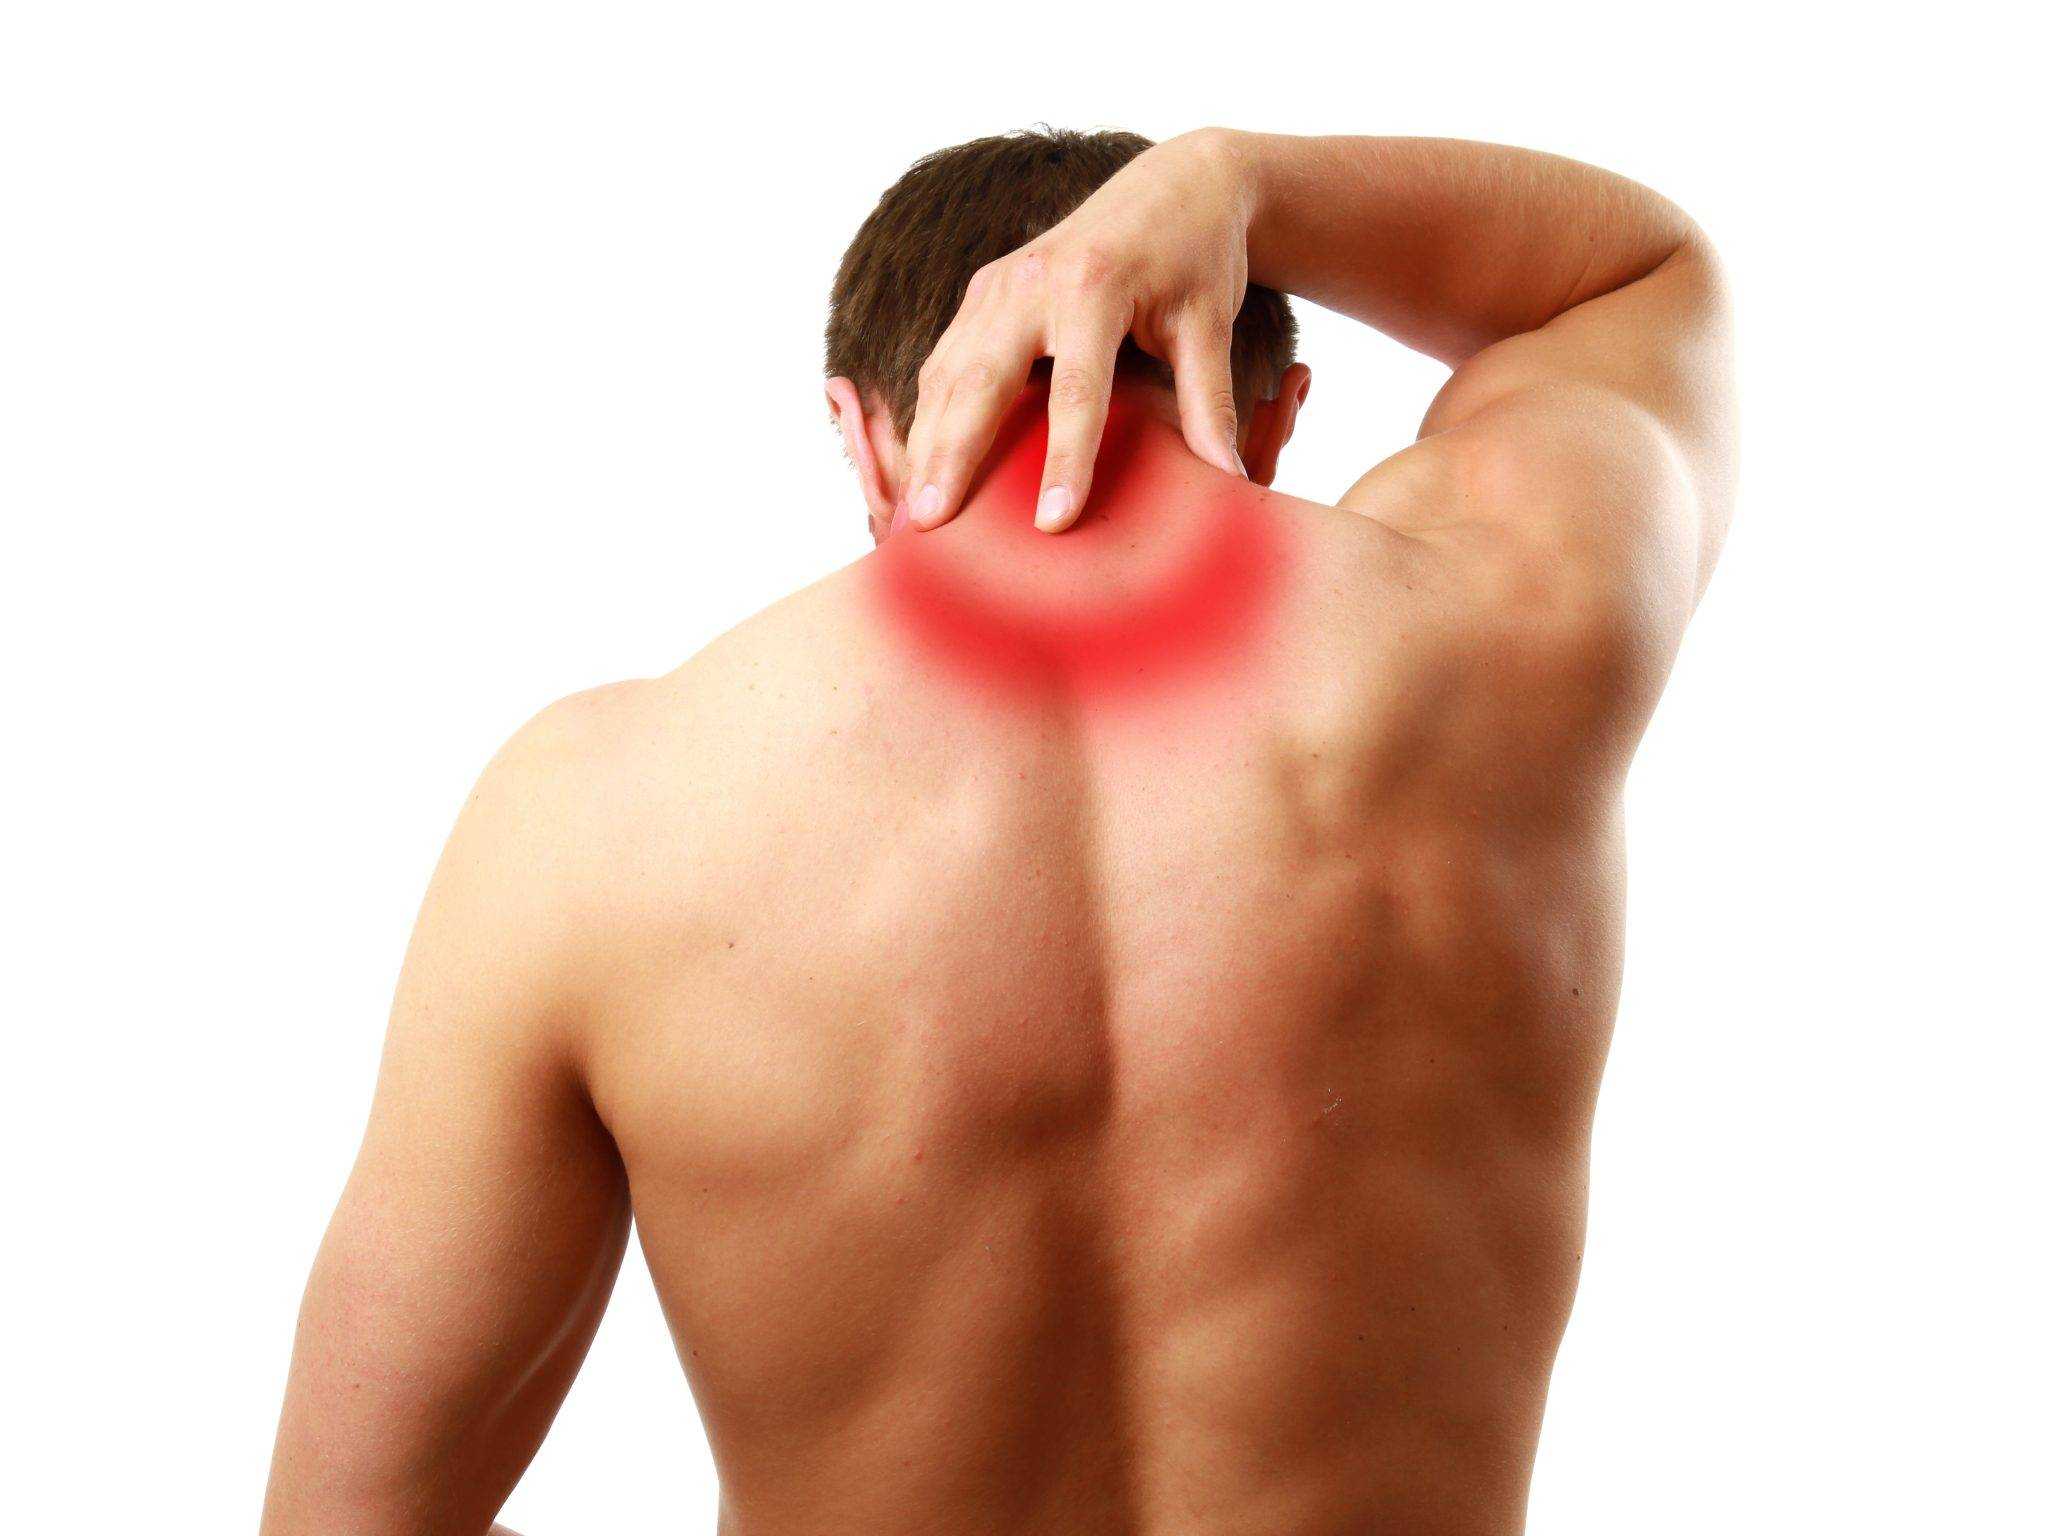 Перенапряжение мышц - симптомы и лечение в центре остеопатии